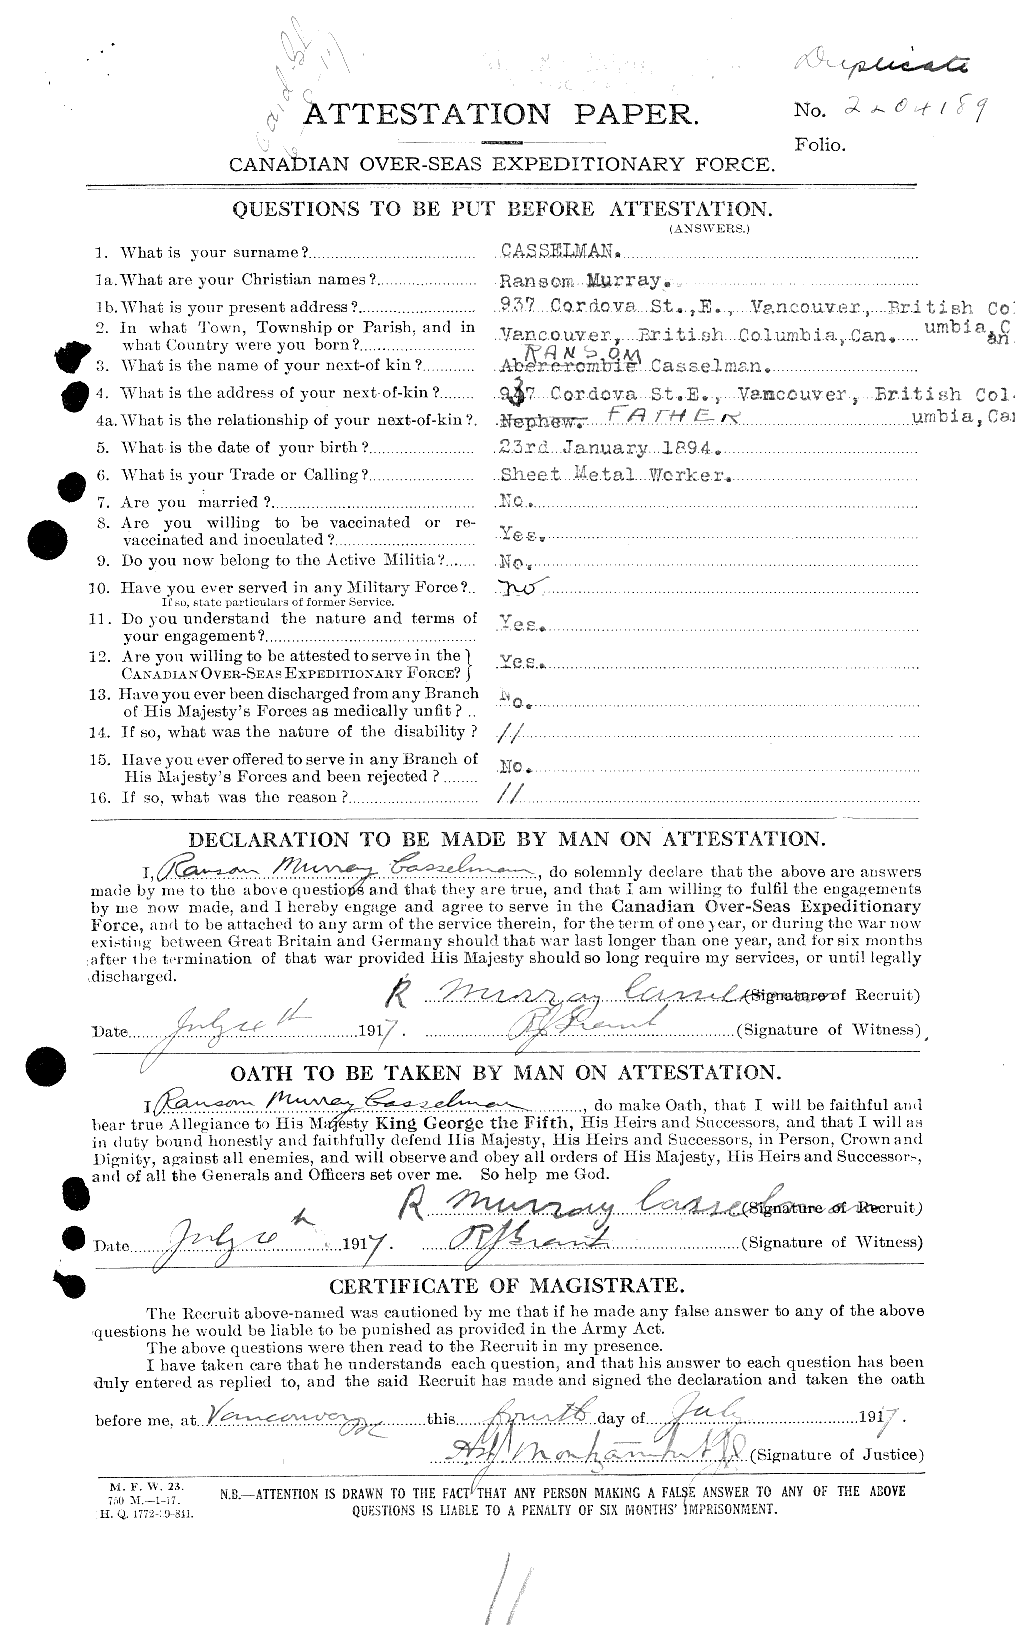 Dossiers du Personnel de la Première Guerre mondiale - CEC 006322a